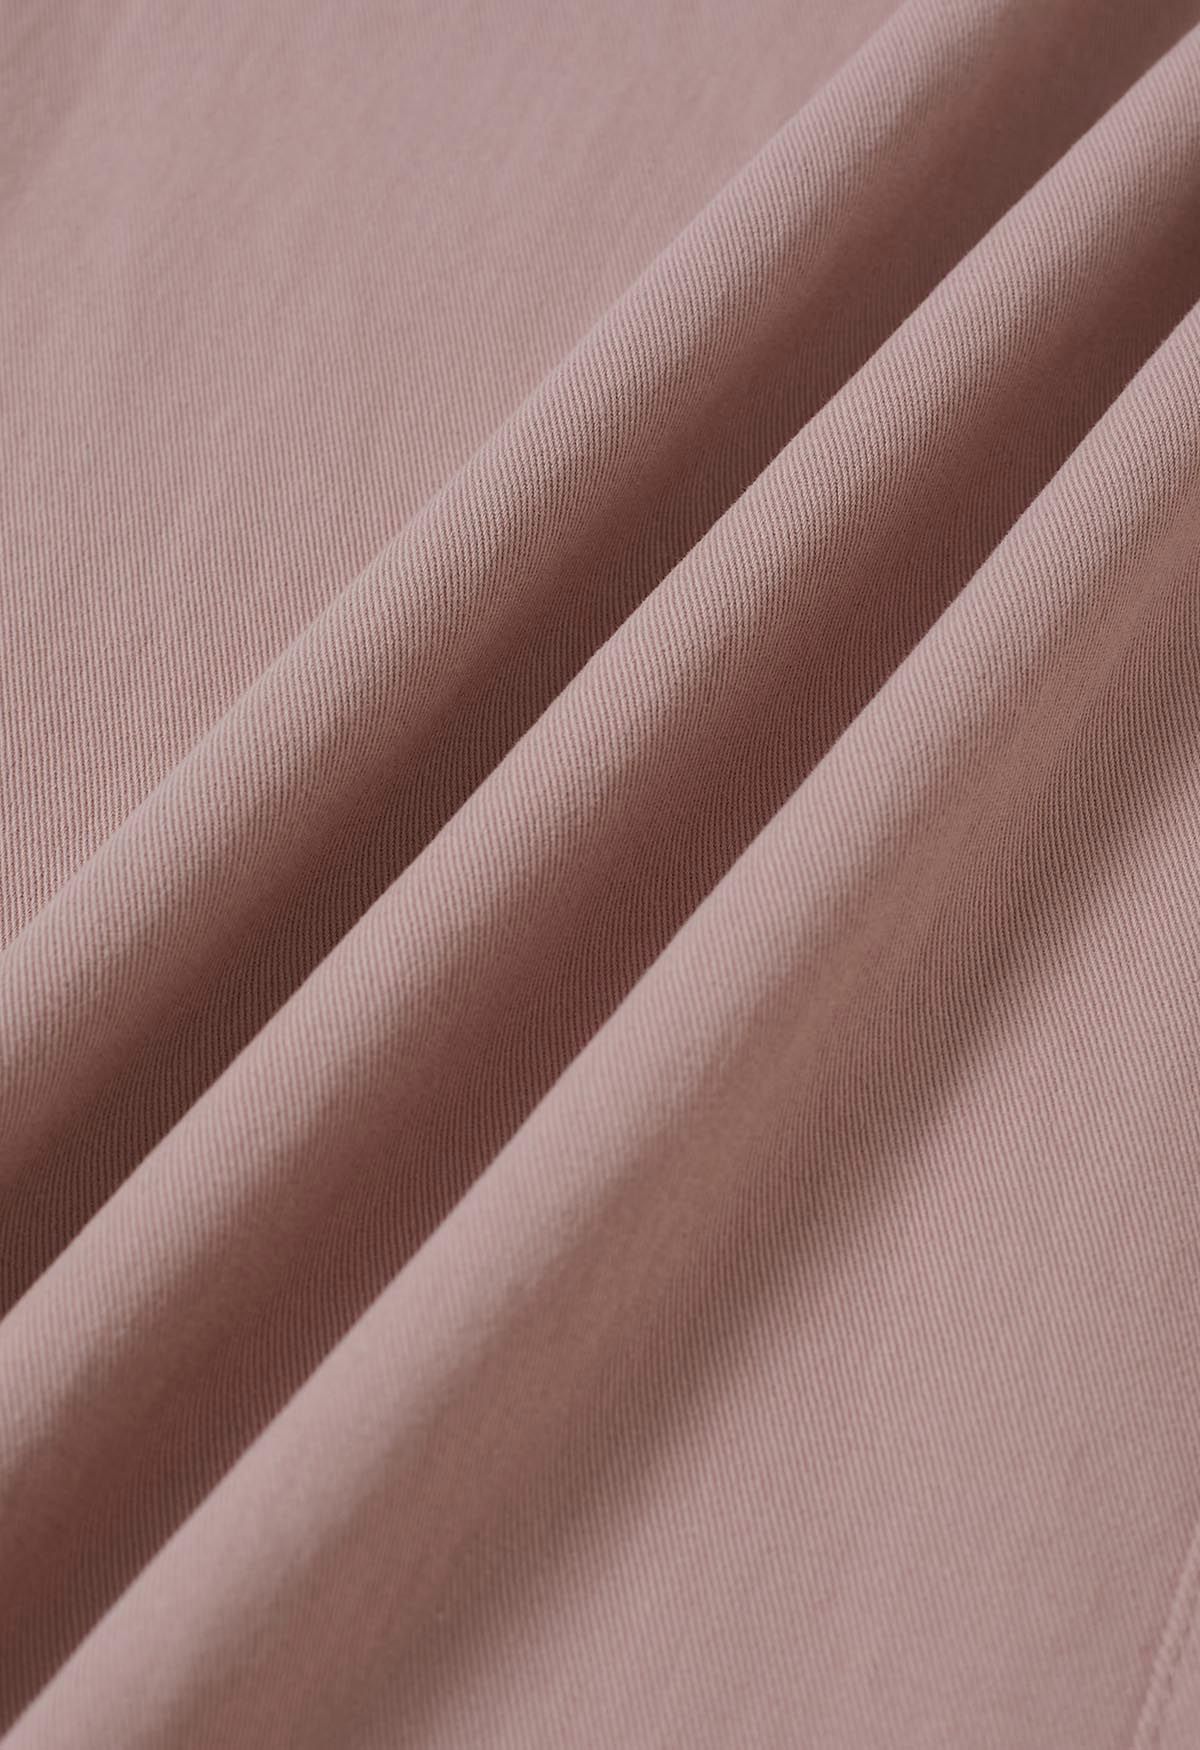 Pantalones anchos de algodón suave en rosa